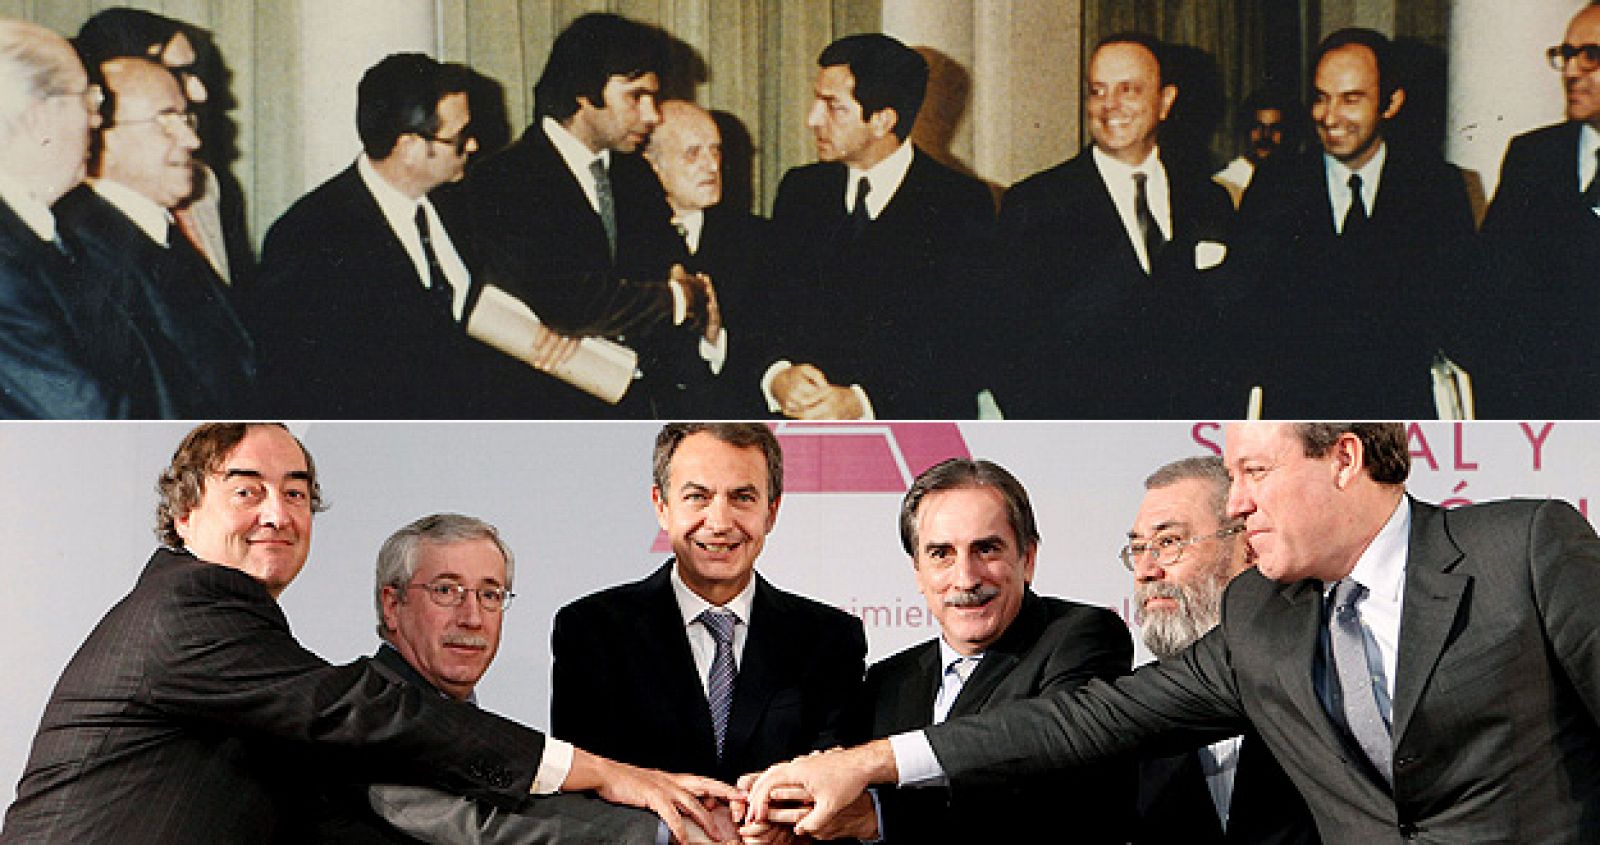 Los Pactos de La Moncloa se firmaron el 25 de octubre de 1977 por todos los partidos políticos. La reforma de las pensiones se ha firmado el 2 de febrero de 2011 en el mismo lugar.